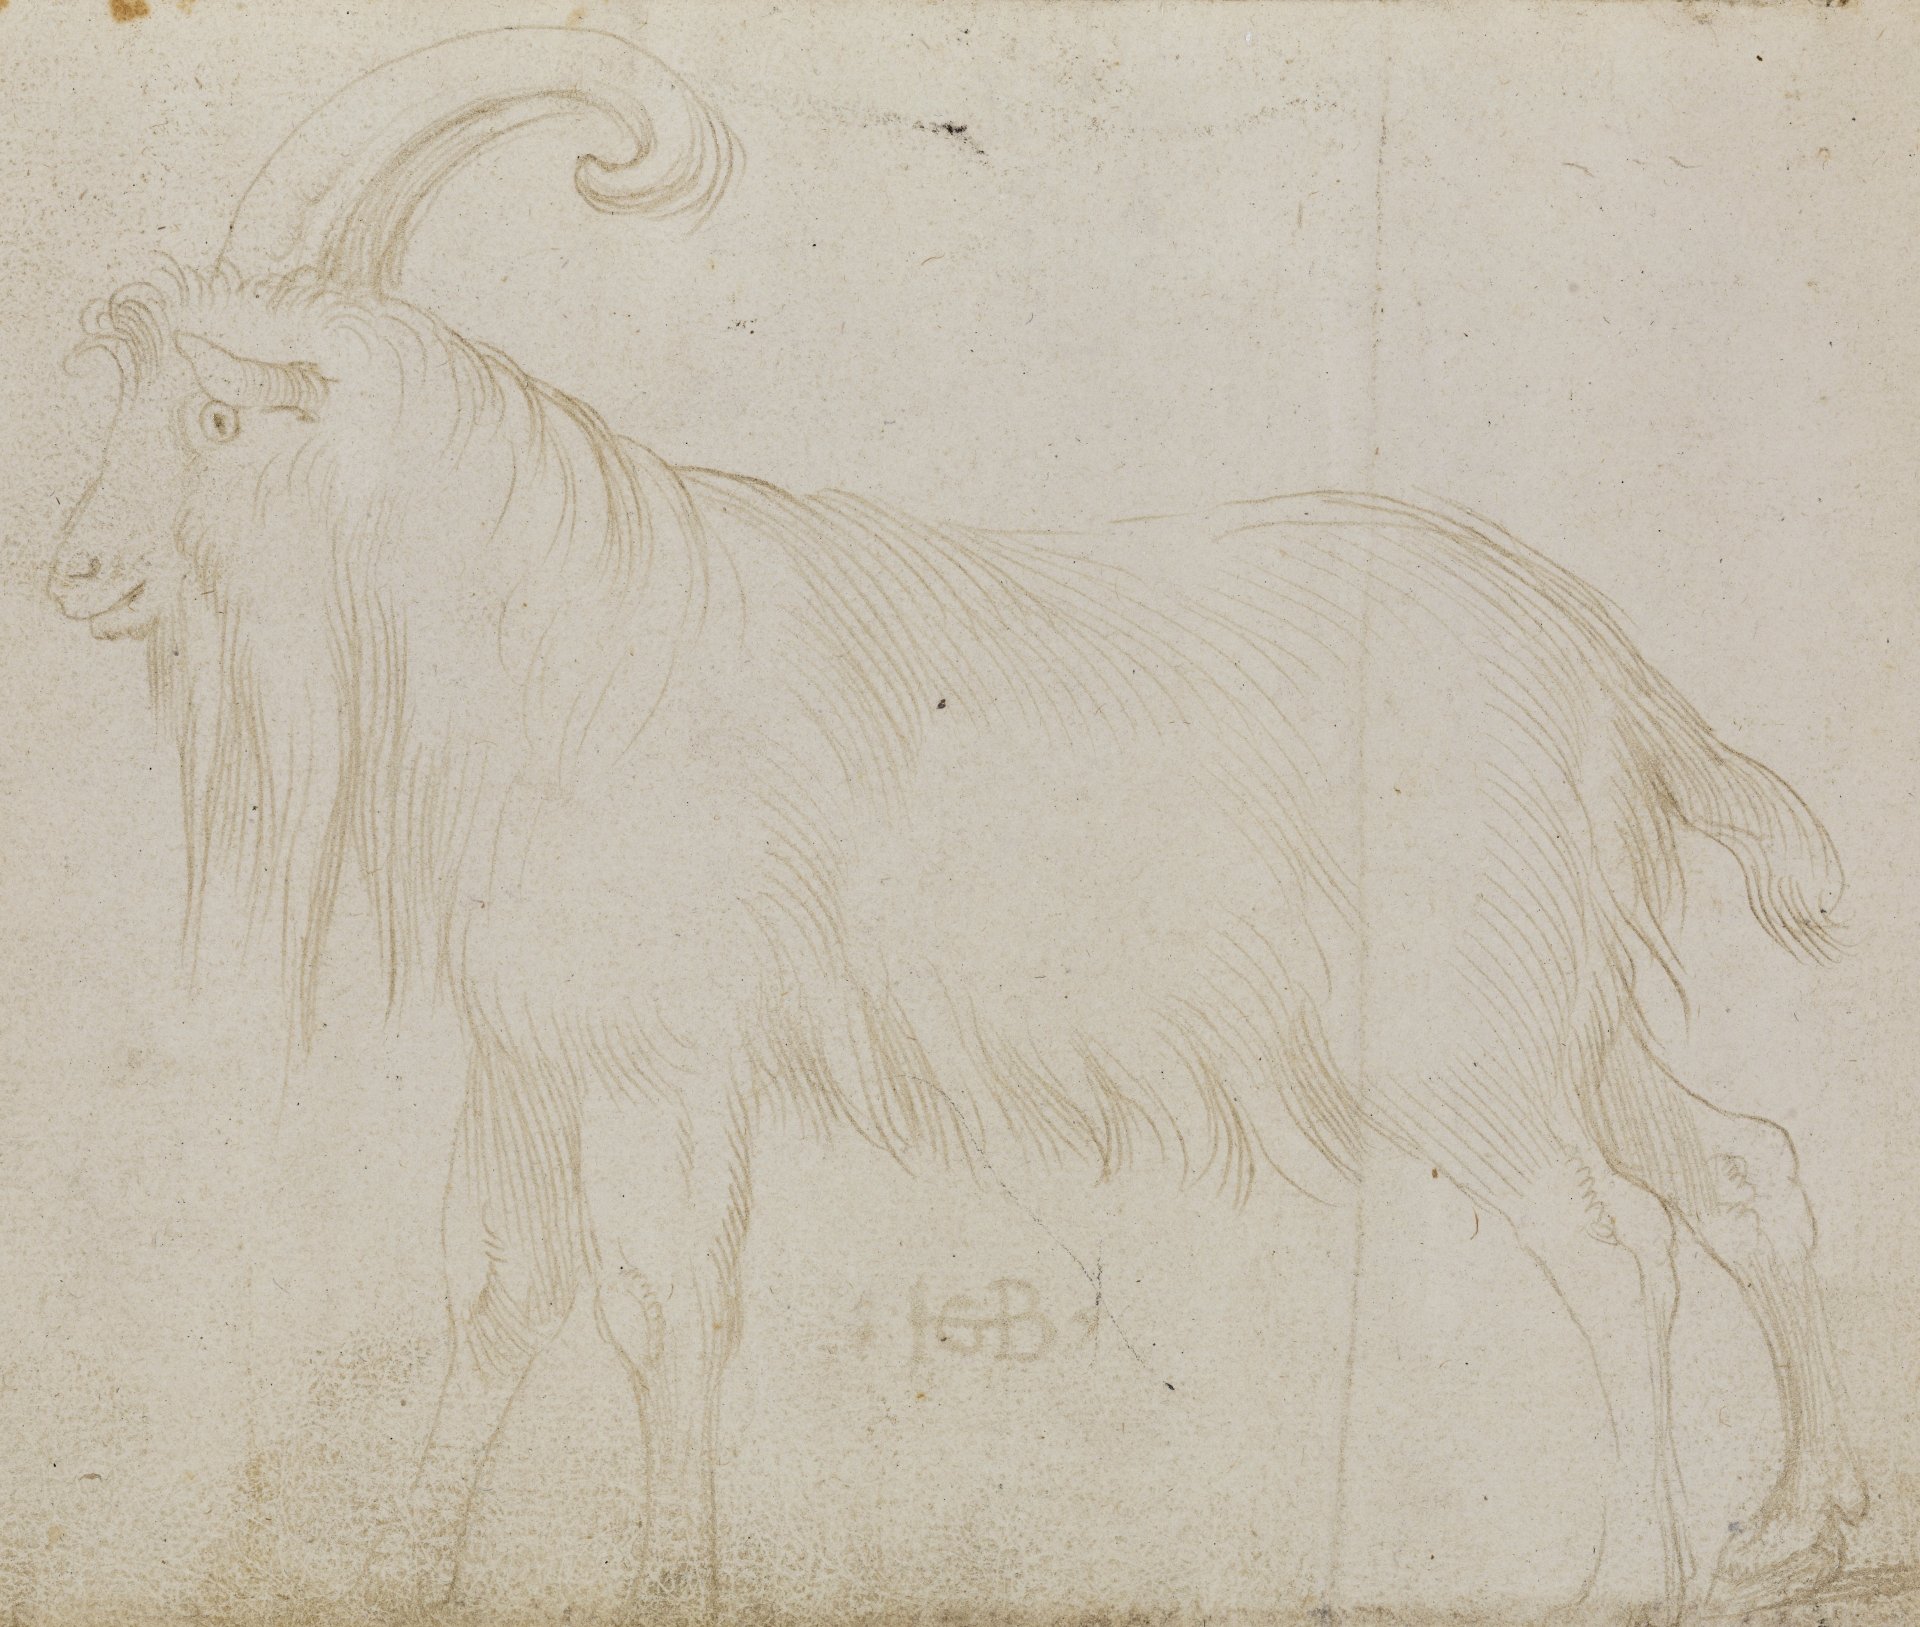 Abbildung einer Zeichnung aus dem Karlsruher Skizzenbuch des Renaissance-Künstlers Hans Baldung Grien. Zu sehen ist die Zeichnung eines Ziegenbocks.